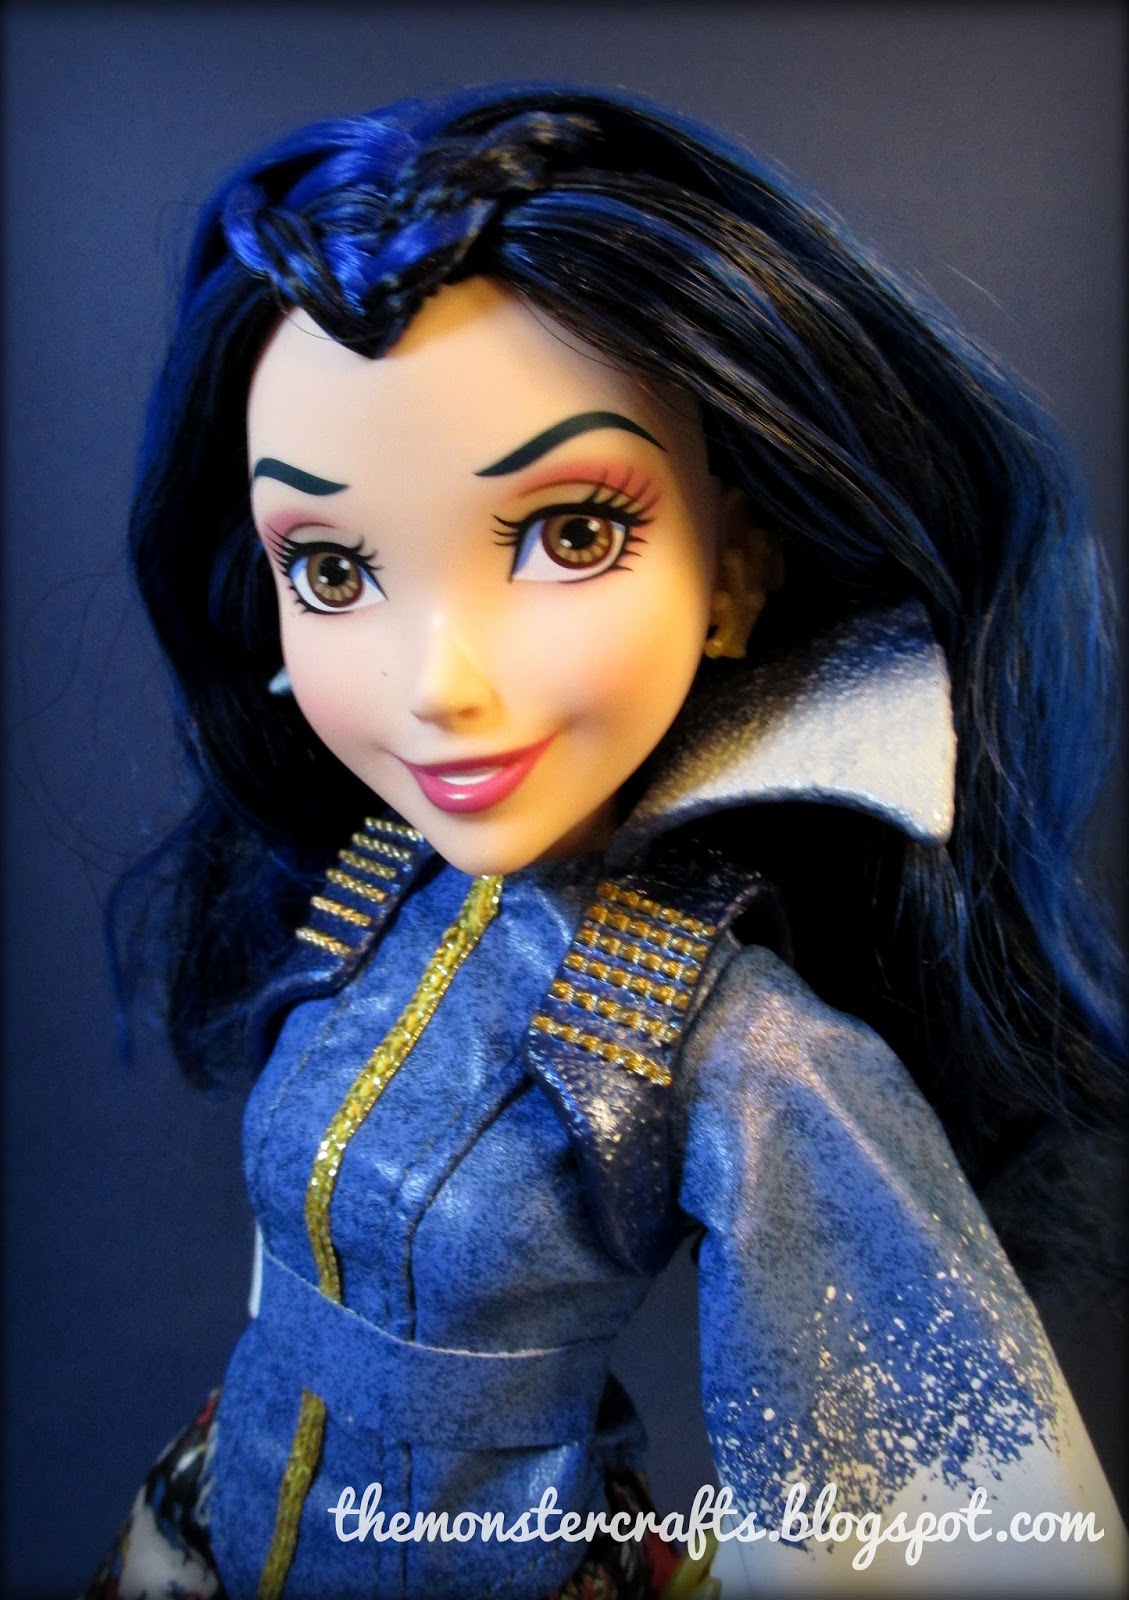 Doll Review: Disney Descendants signature Evie